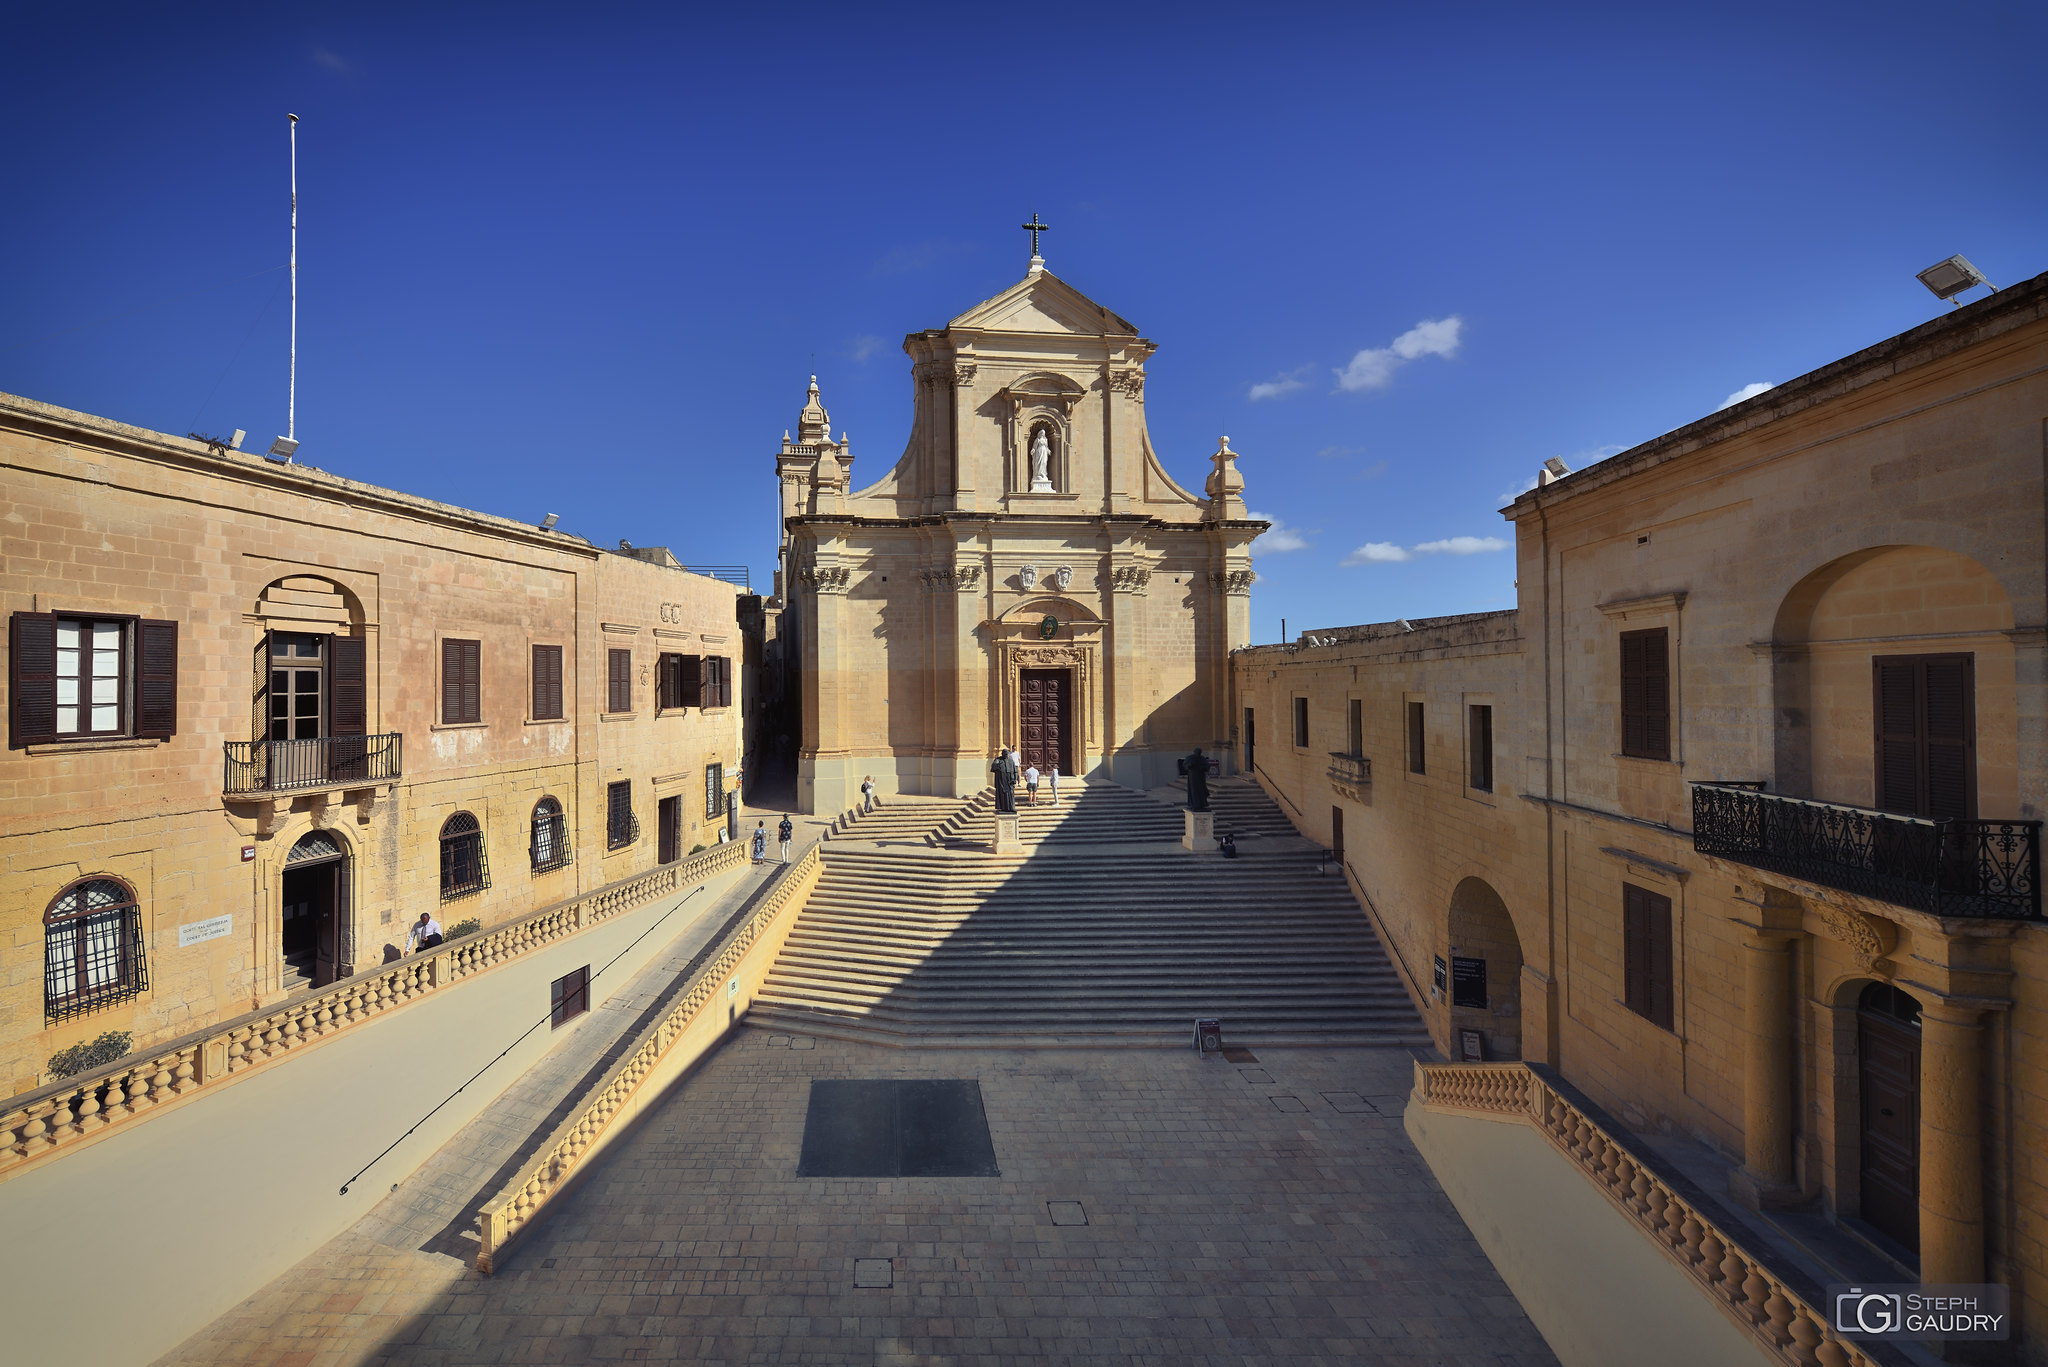 Cathédrale Notre-Dame-de-l'Assomption de Gozo [Click to start slideshow]